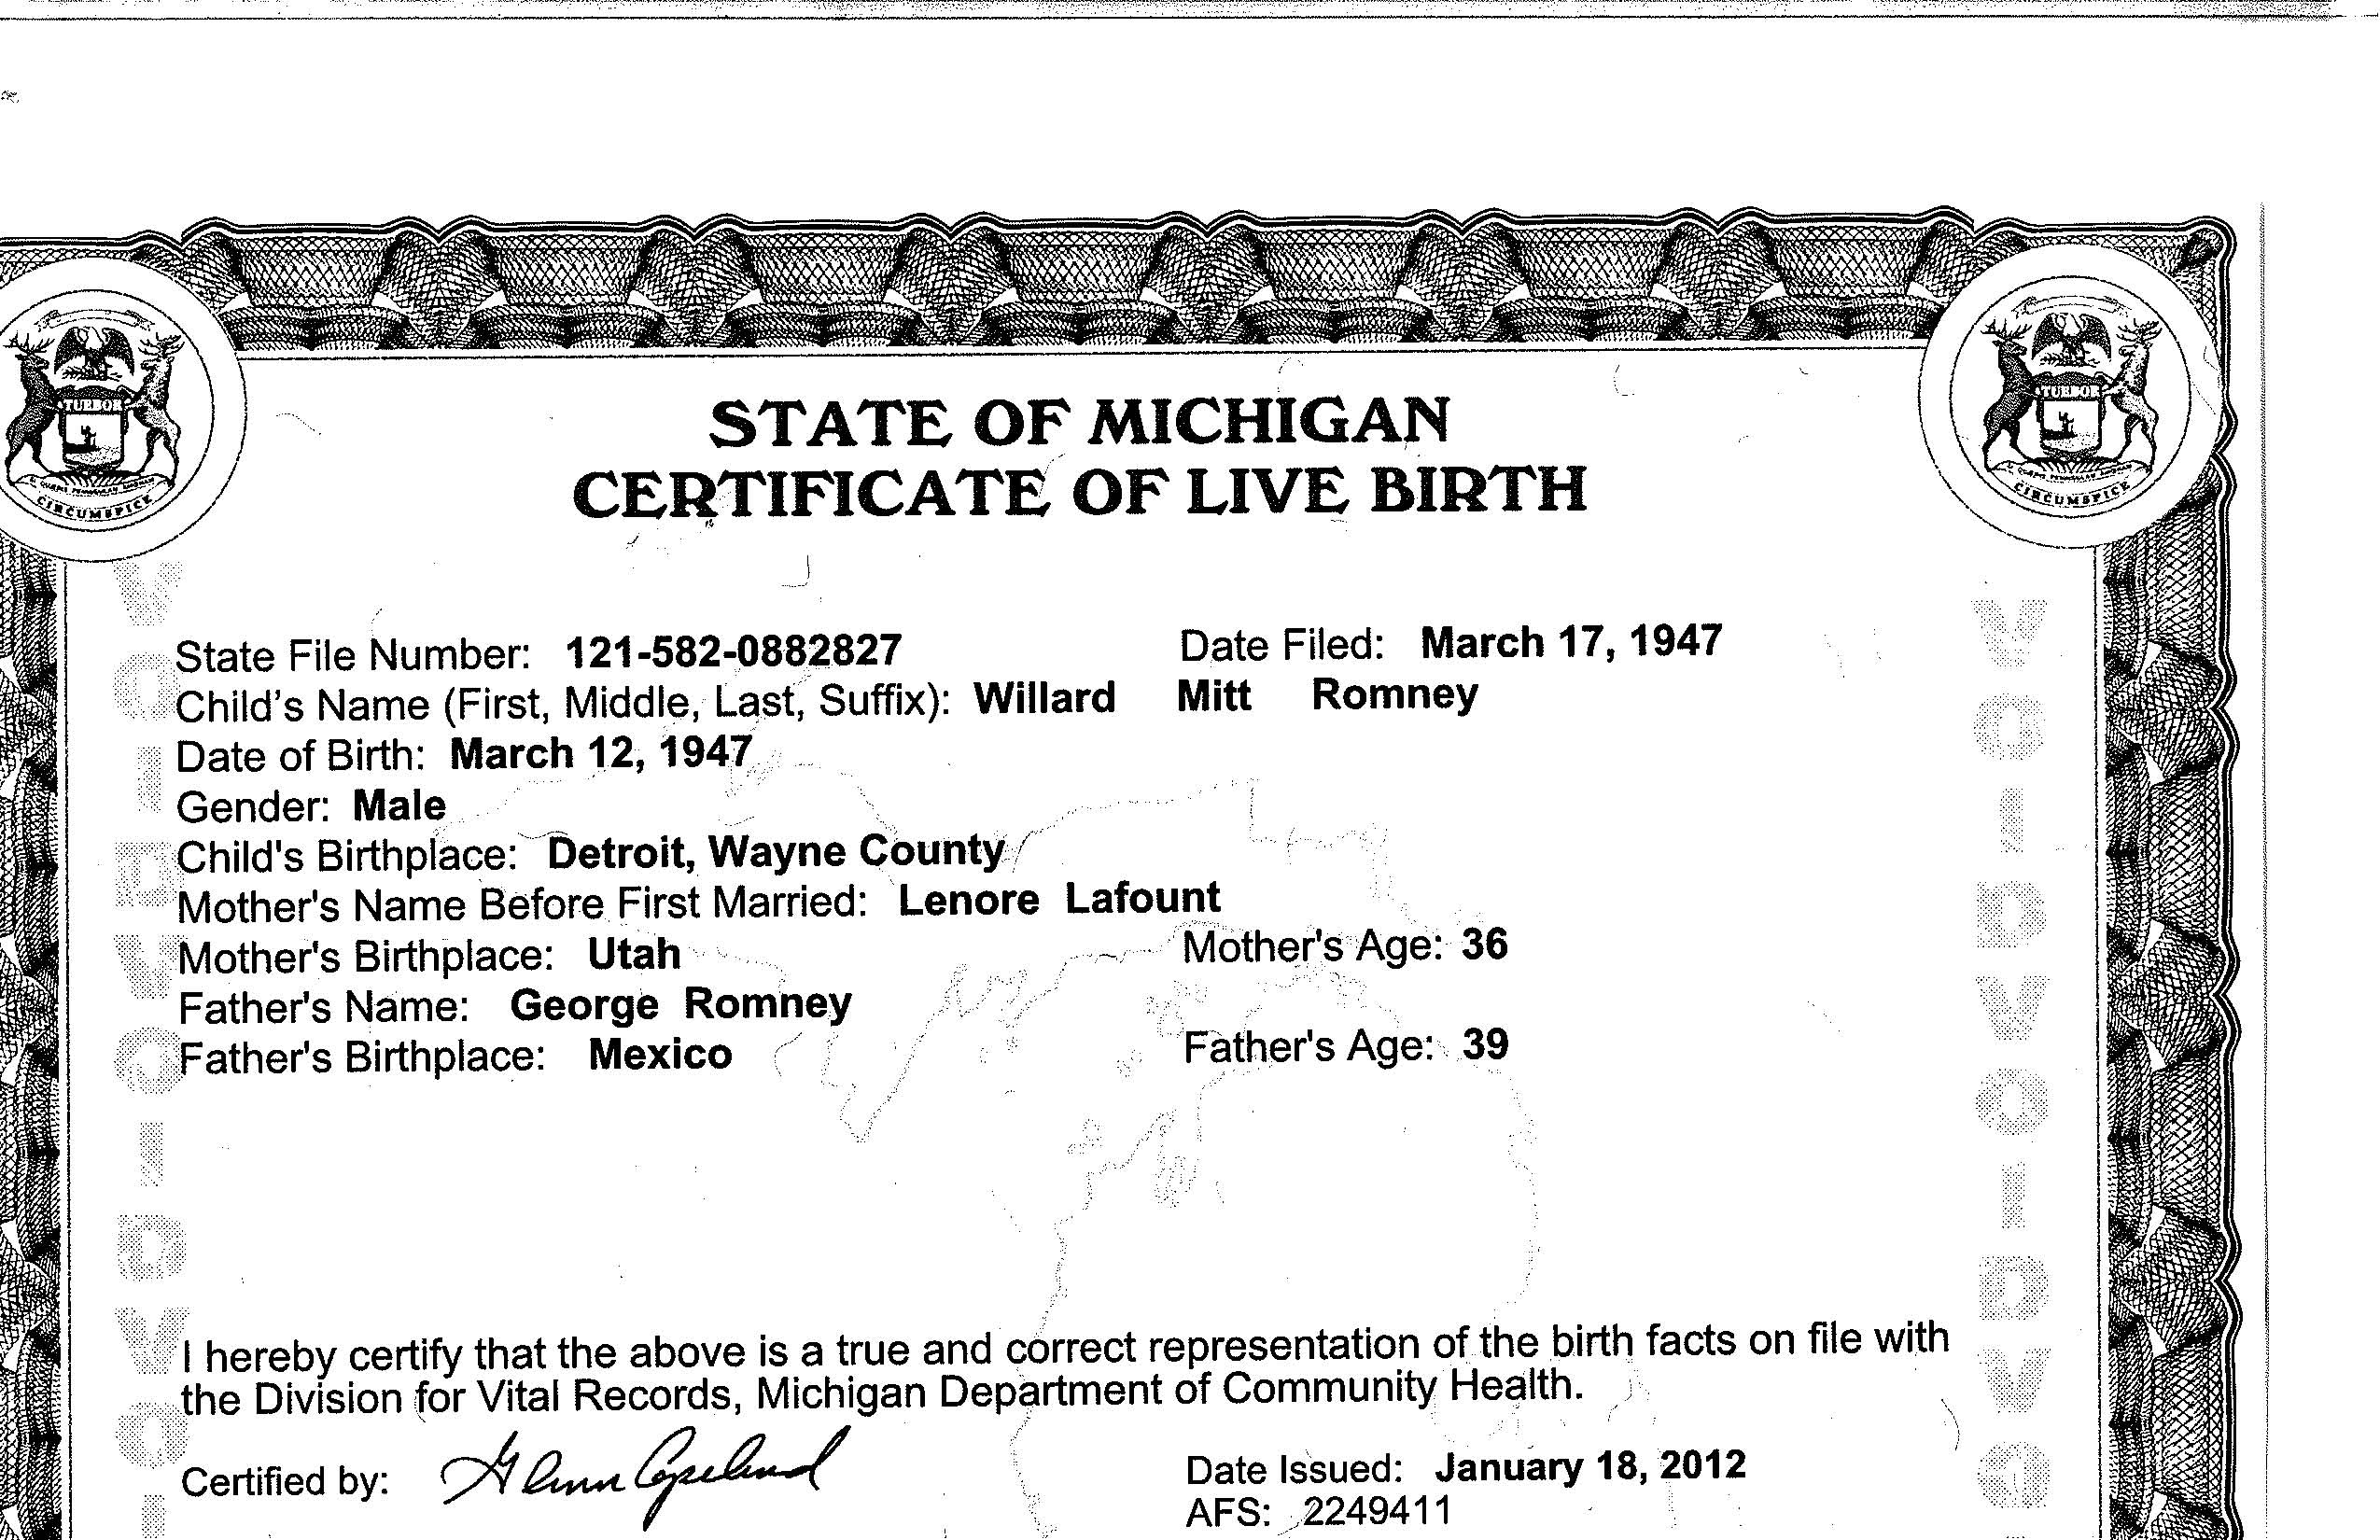 Mitt Romney birth certificate (short form)